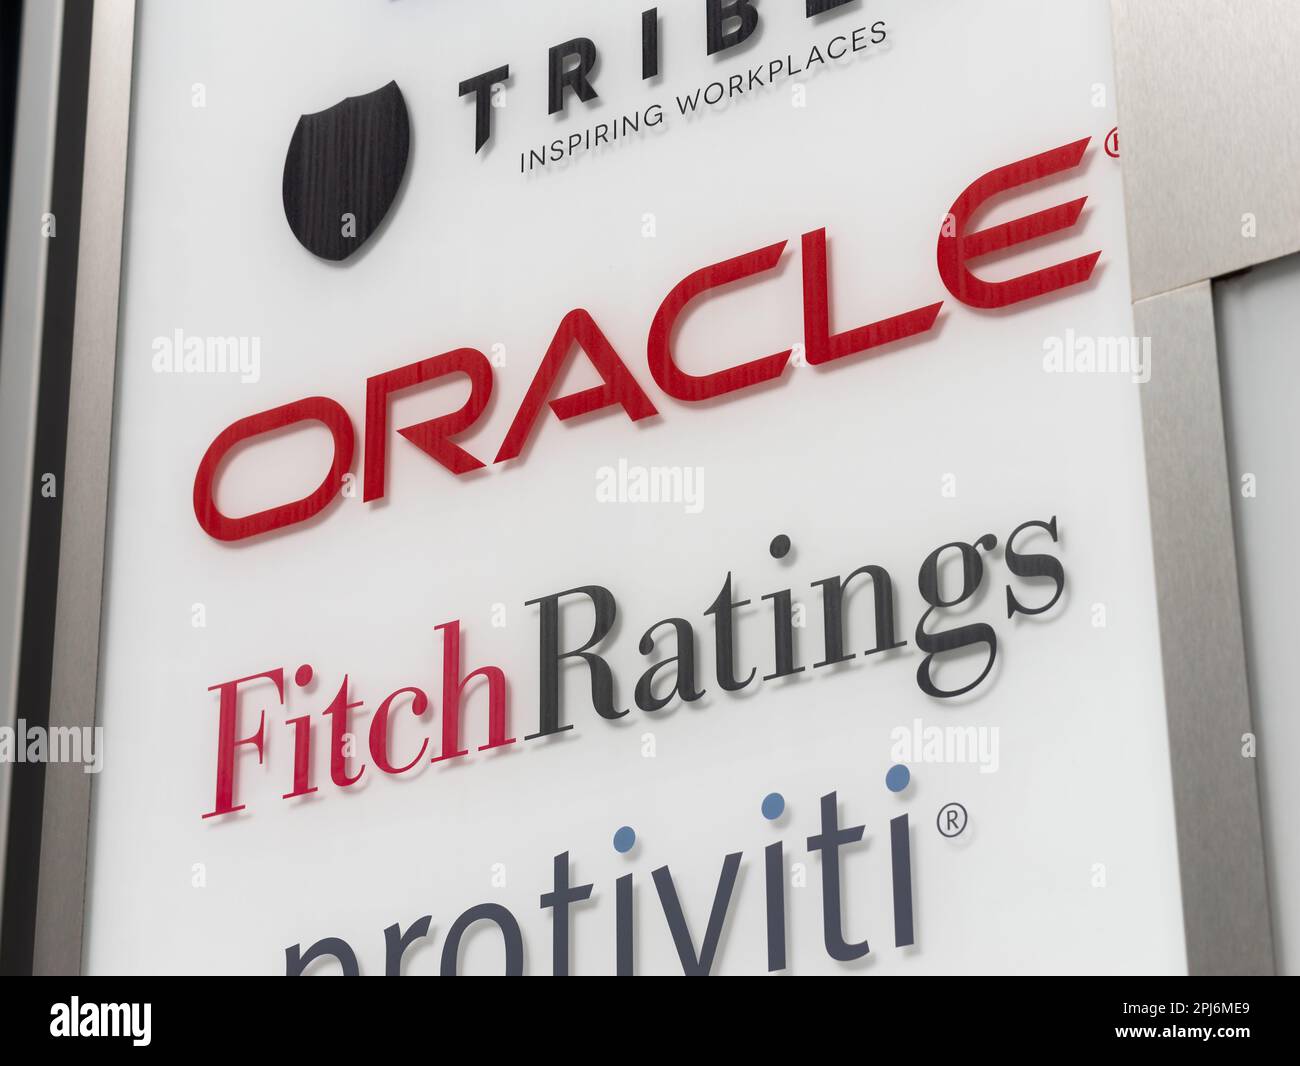 Le logo Oracle Corporation et Fitch Ratings s'affiche à l'entrée d'un complexe de bureaux. Société américaine de technologie informatique et une agence de notation de crédit. Banque D'Images